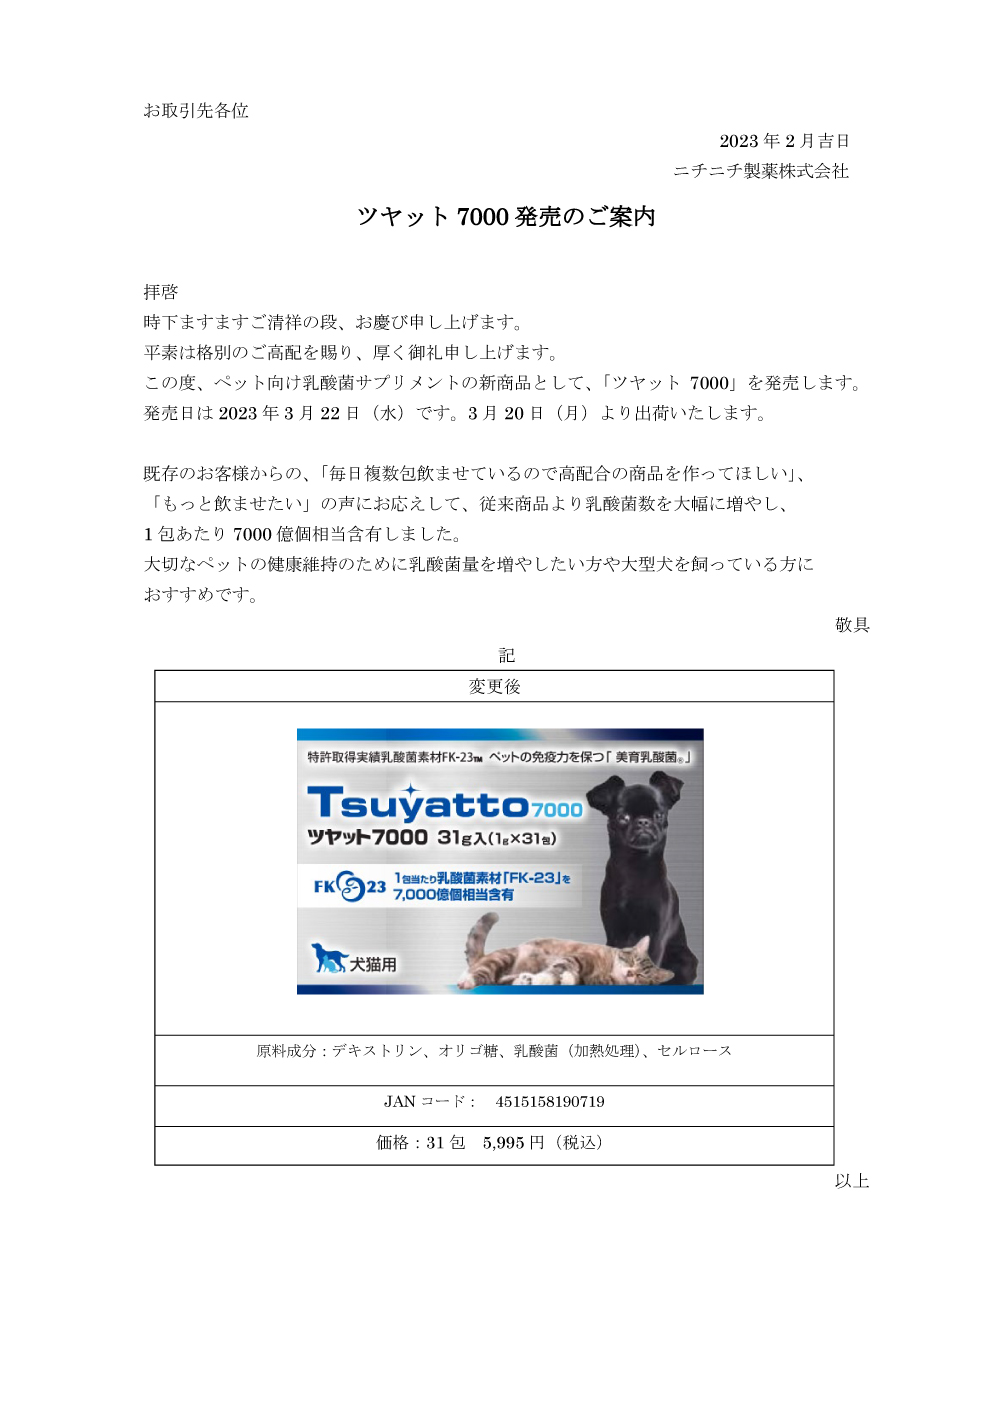 新商品「ツヤット7000」発売のお知らせ | ニチニチ製薬